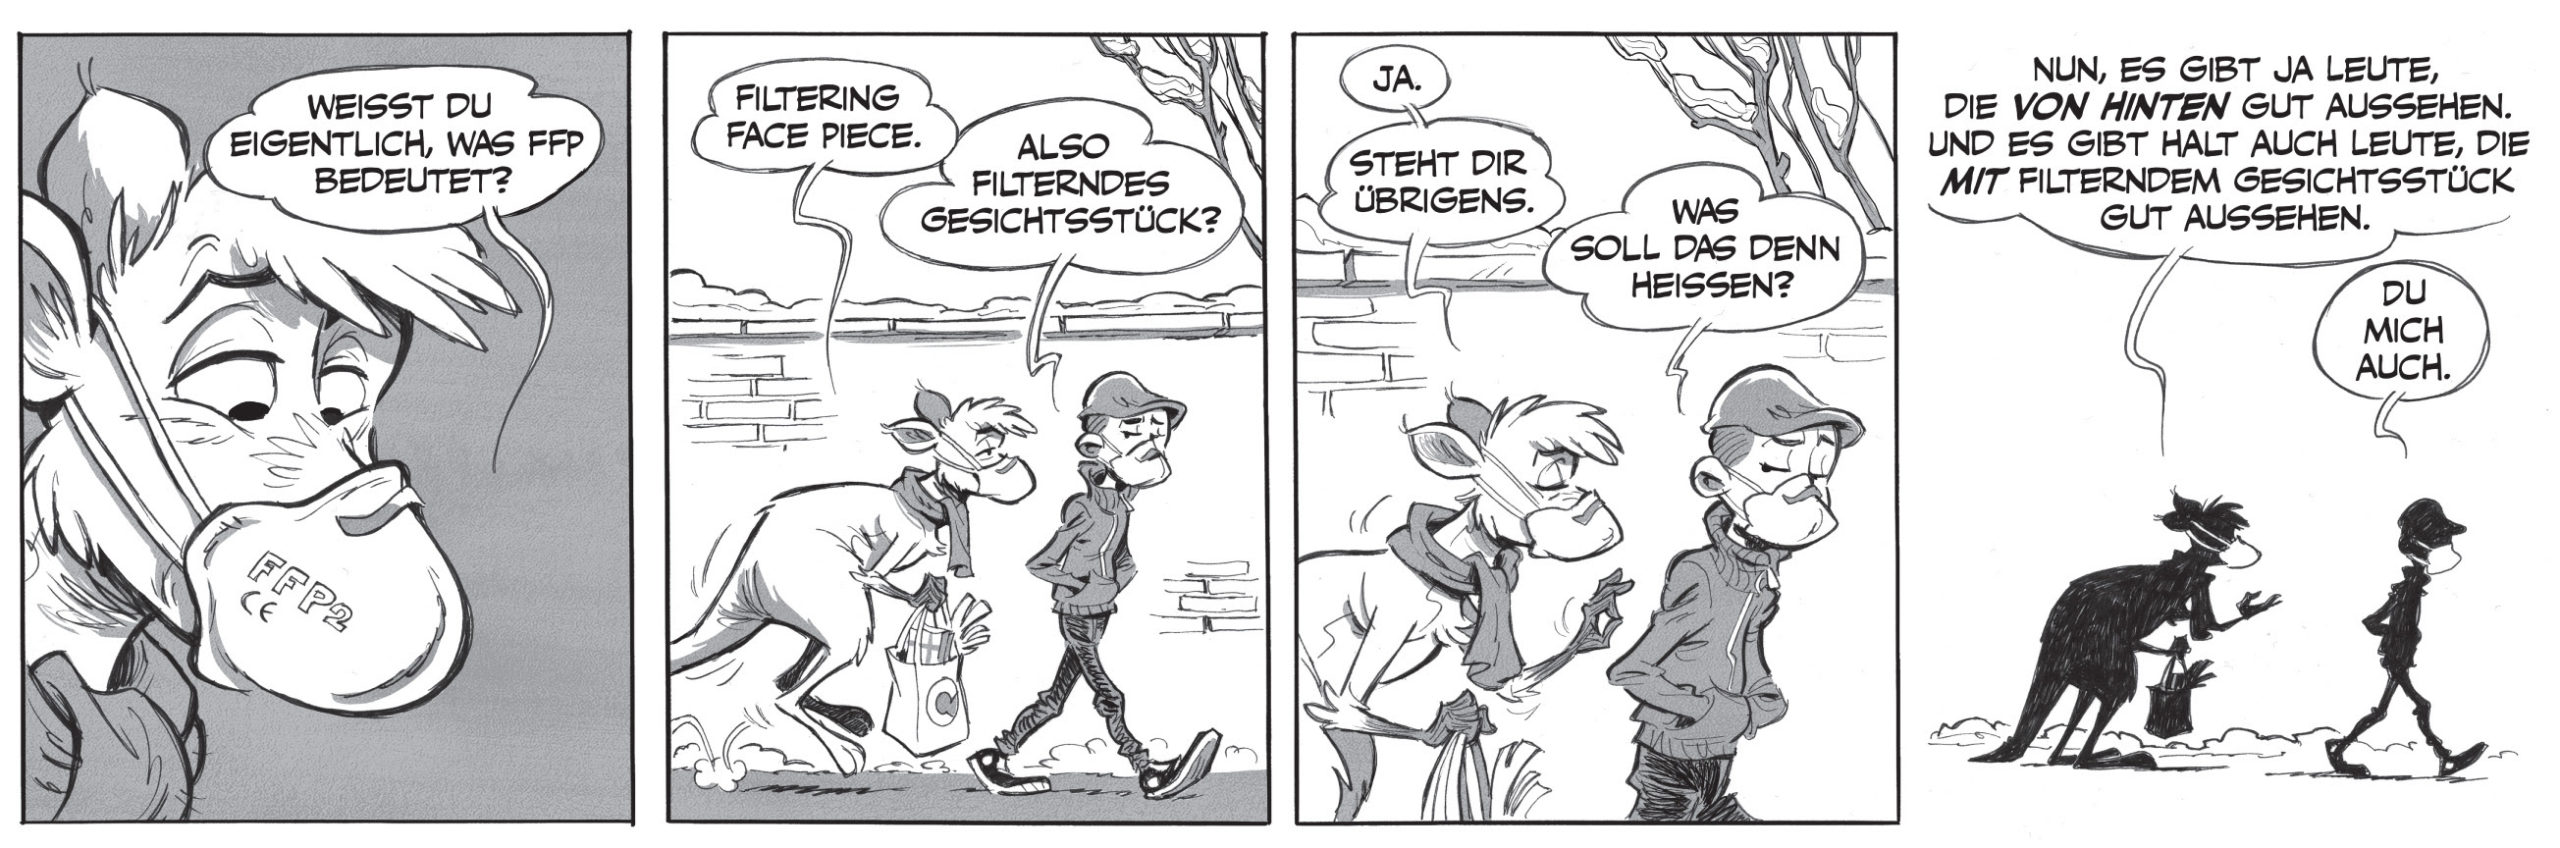 Die Känguru-Comics von Bernd Kissel und Marc-Uwe Kling: FFP